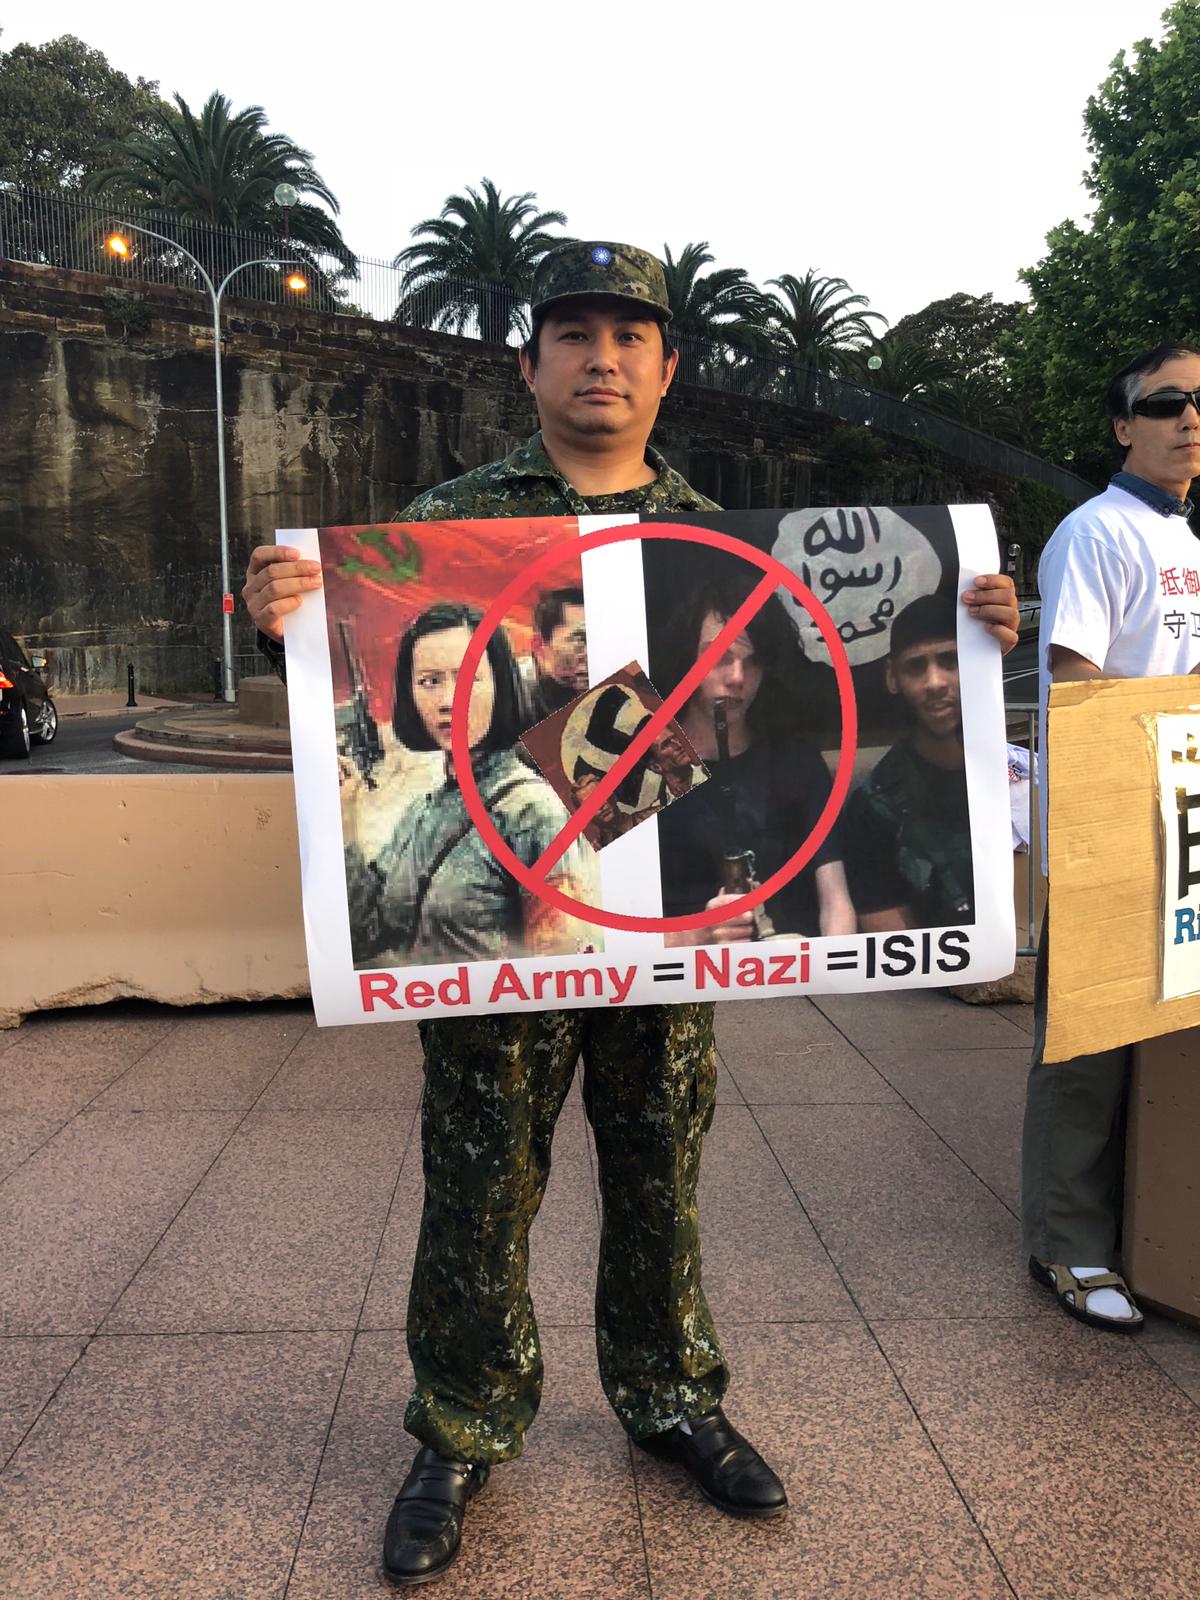 Protestní transparent vyjadřujcí názor, že Rudé gardy oslavované v opeře „Lake Honghu“ (Jezero Chung-chu) se dopouštěli masového vyvražďování obyvatelstva, podobně jako nacisté za II. světové války bevo ISIS v současnosti. Protestující stojí před Opera House v Sydney, 4. listopadu 2018. (Poskytnuto aktivisty)